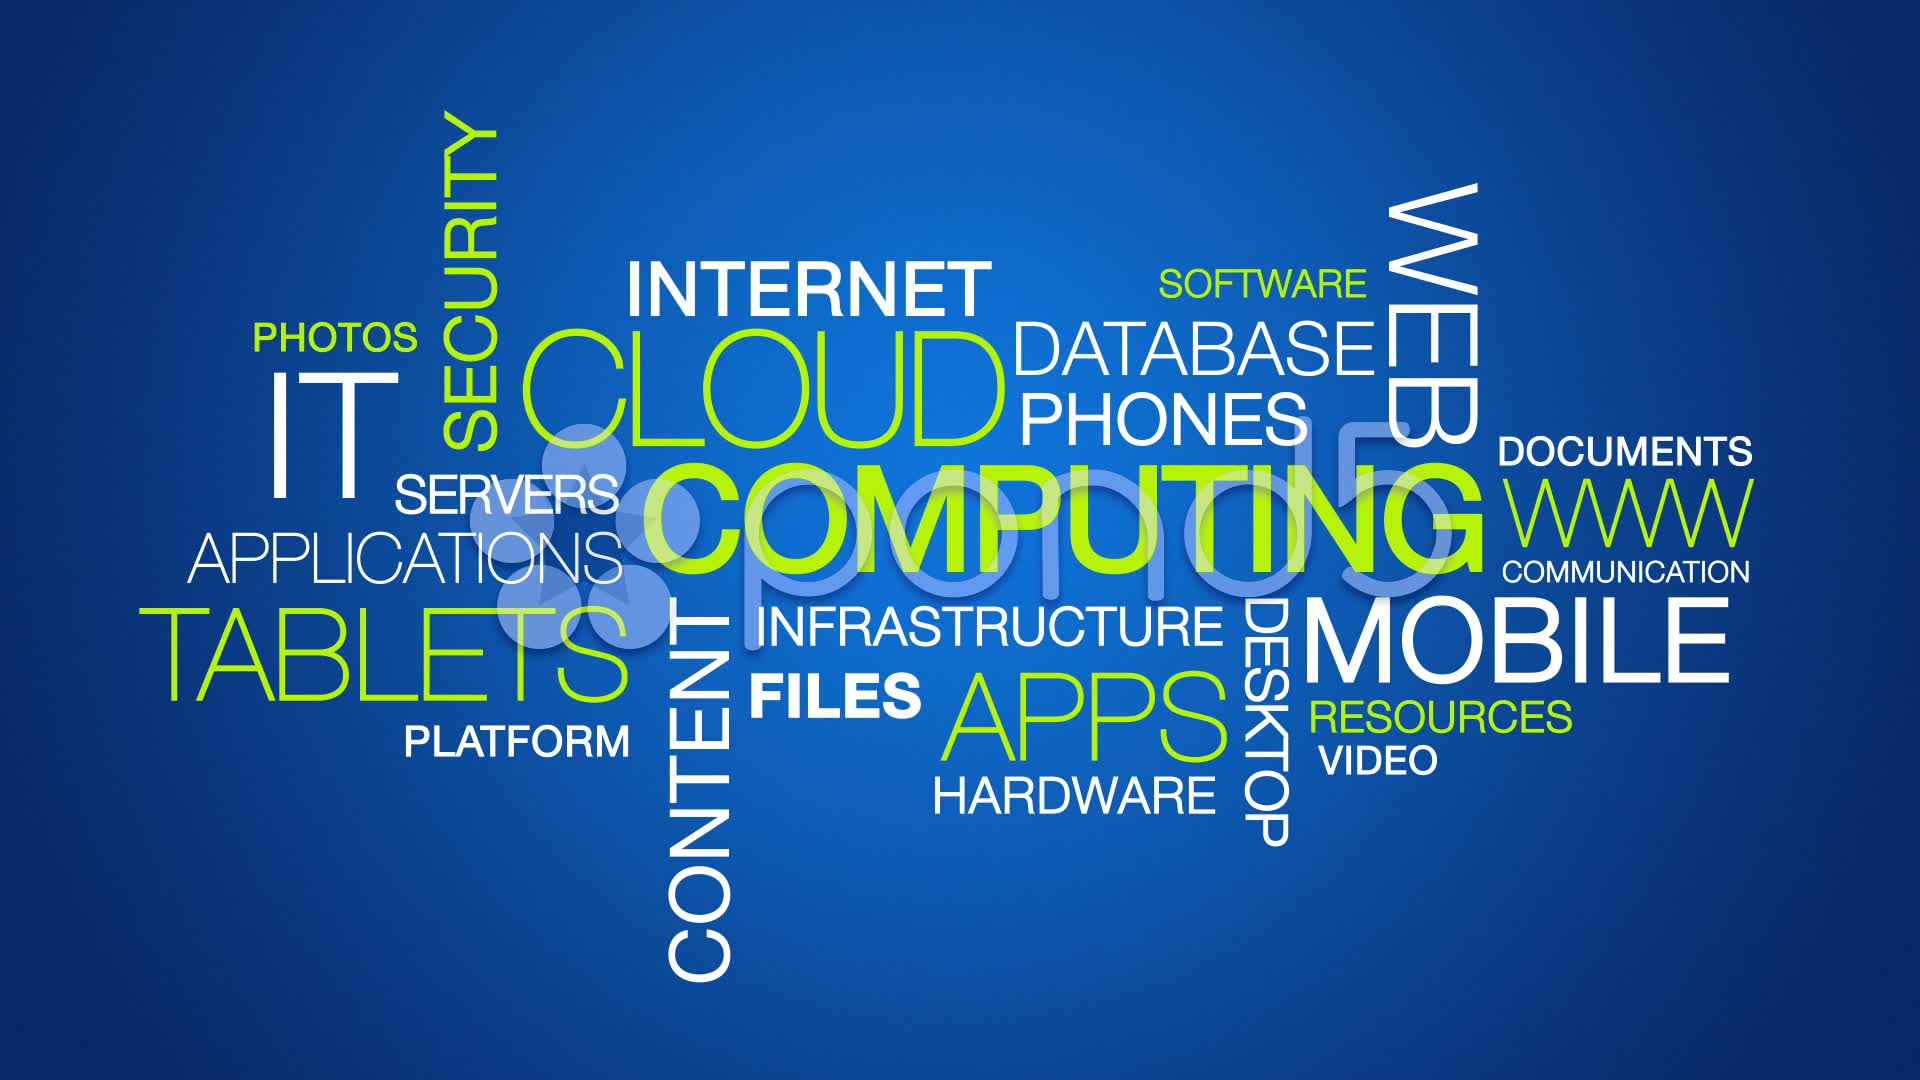 Cloud Computing Wallpaper. Computing Wallpaper, Cloud Computing Wallpaper and Computing Background